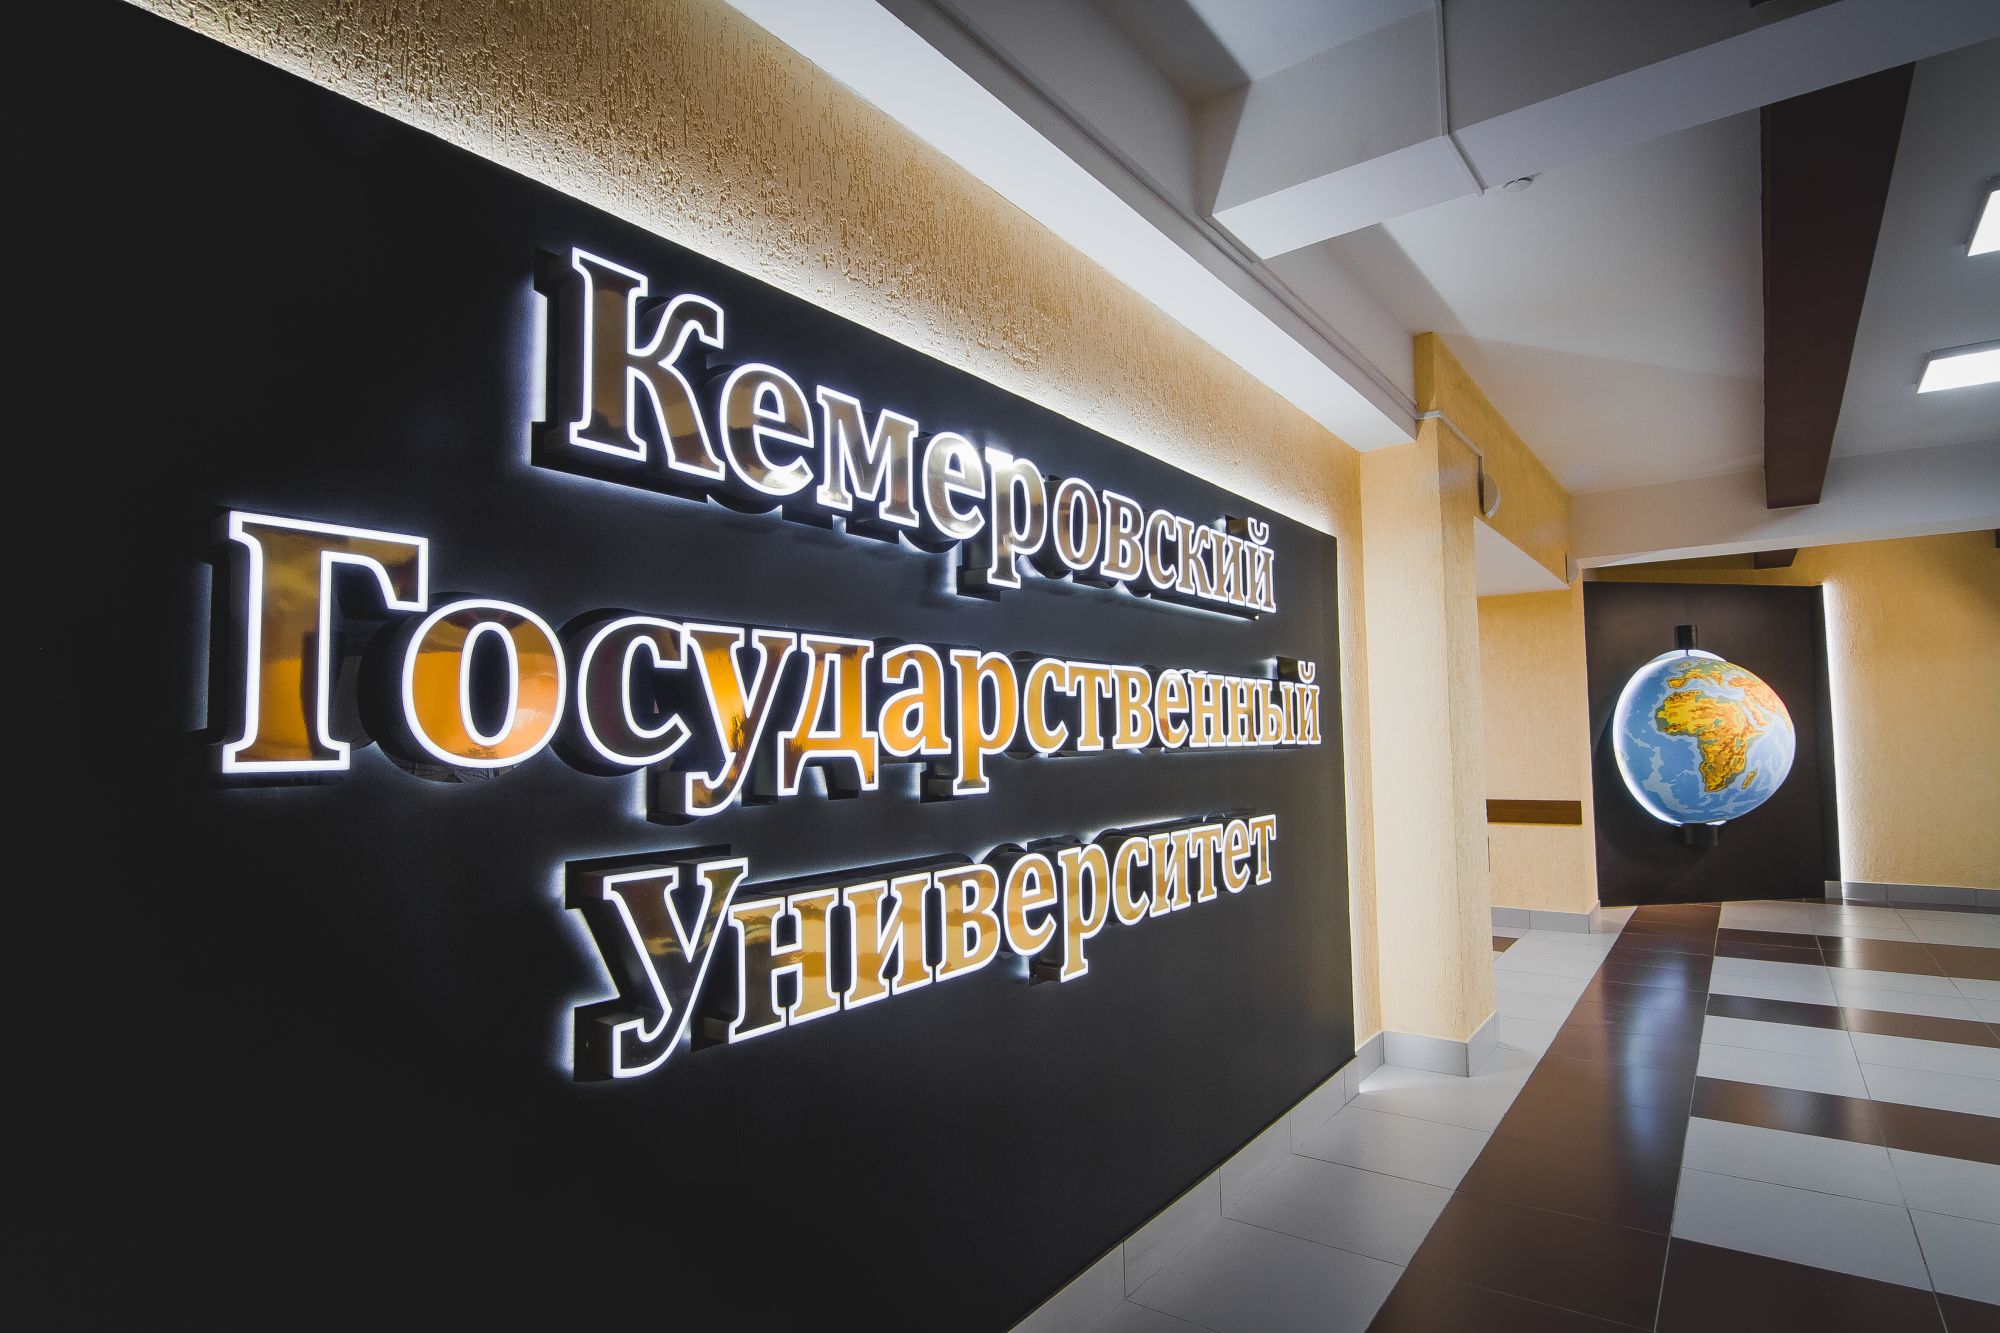 Кемеровский государственный университет успешно прошел государственную аккредитацию образовательной деятельности 